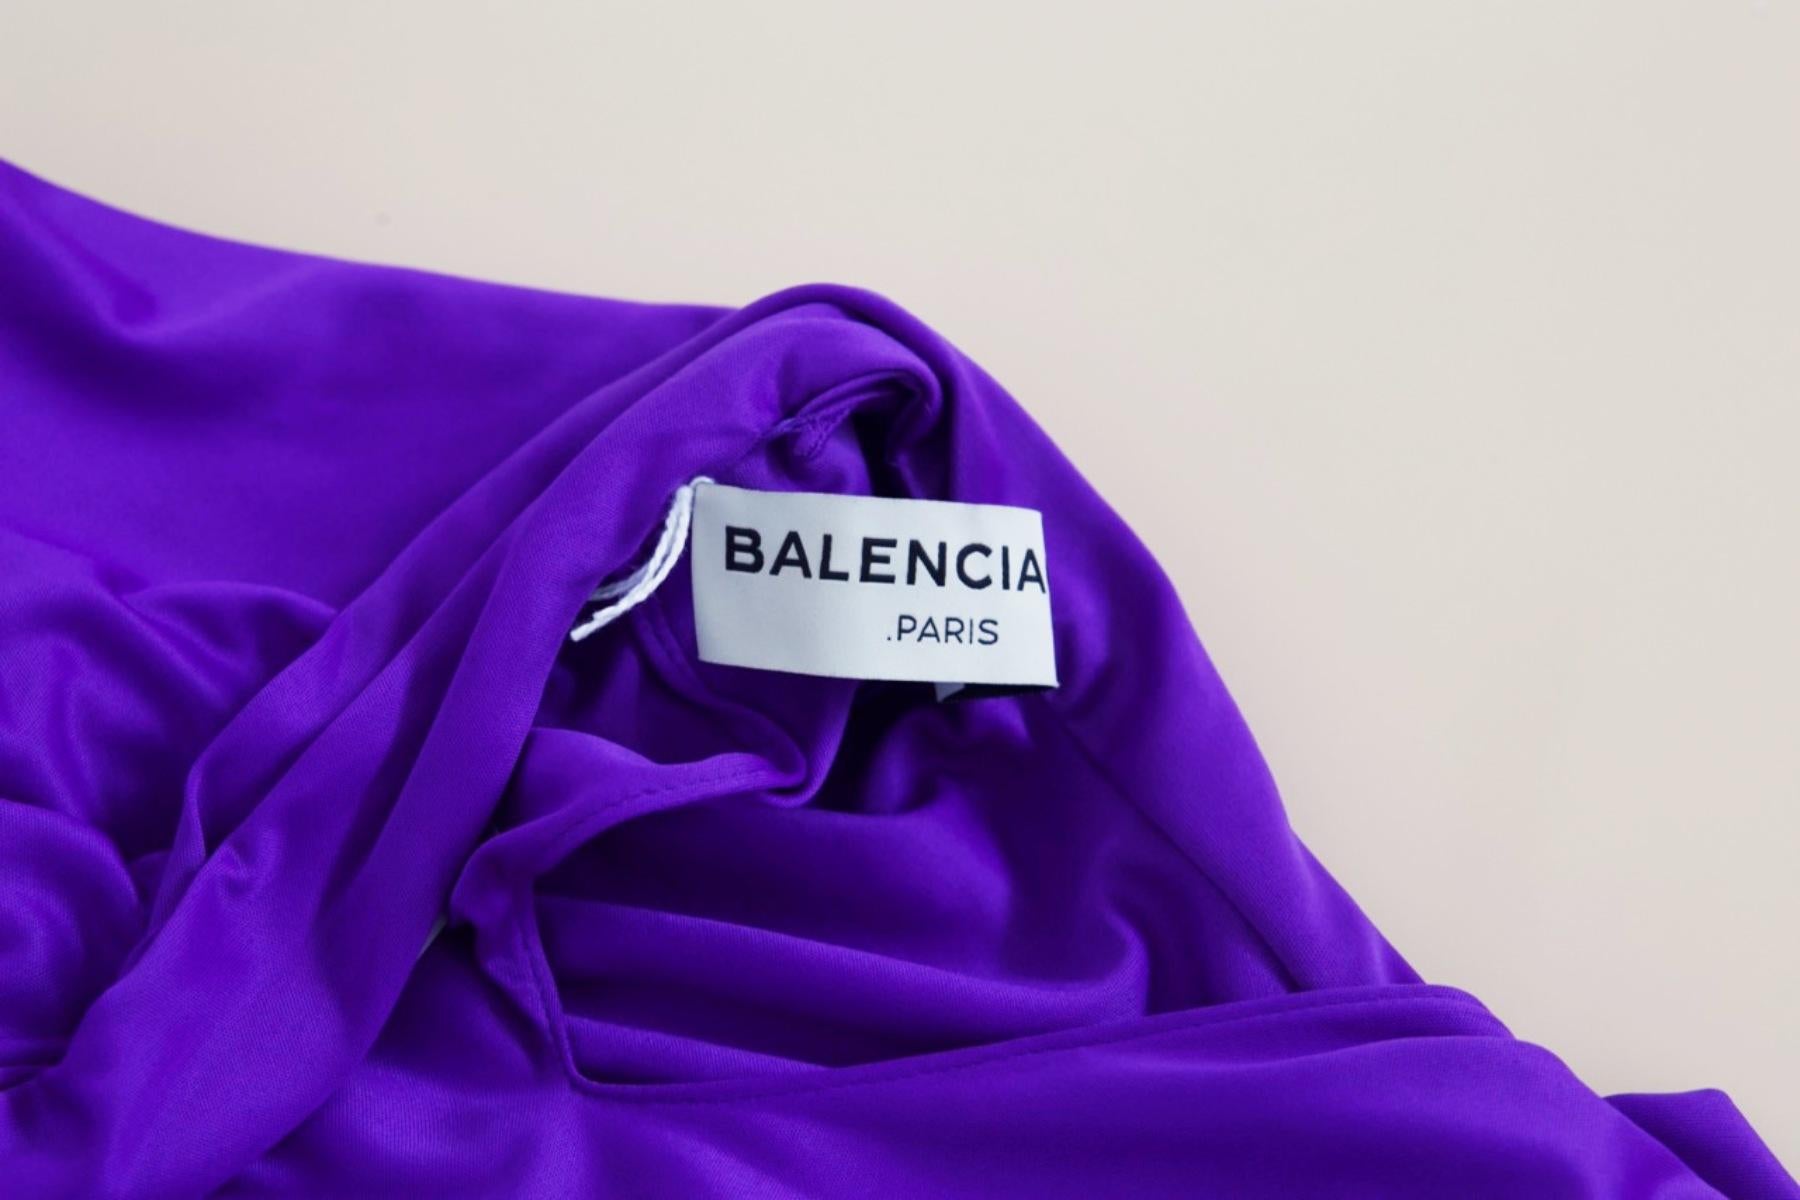 Sexy Vintage-Kleid in Lila, entworfen von Balenciaga in den 1990er Jahren, hergestellt in Italien. ORIGINALETIKETT.
Das Kleid ist ein Minikleid in zugänglichem Lila, sehr extravagant. Es ist sehr tailliert geschnitten und hat einen kurzen,